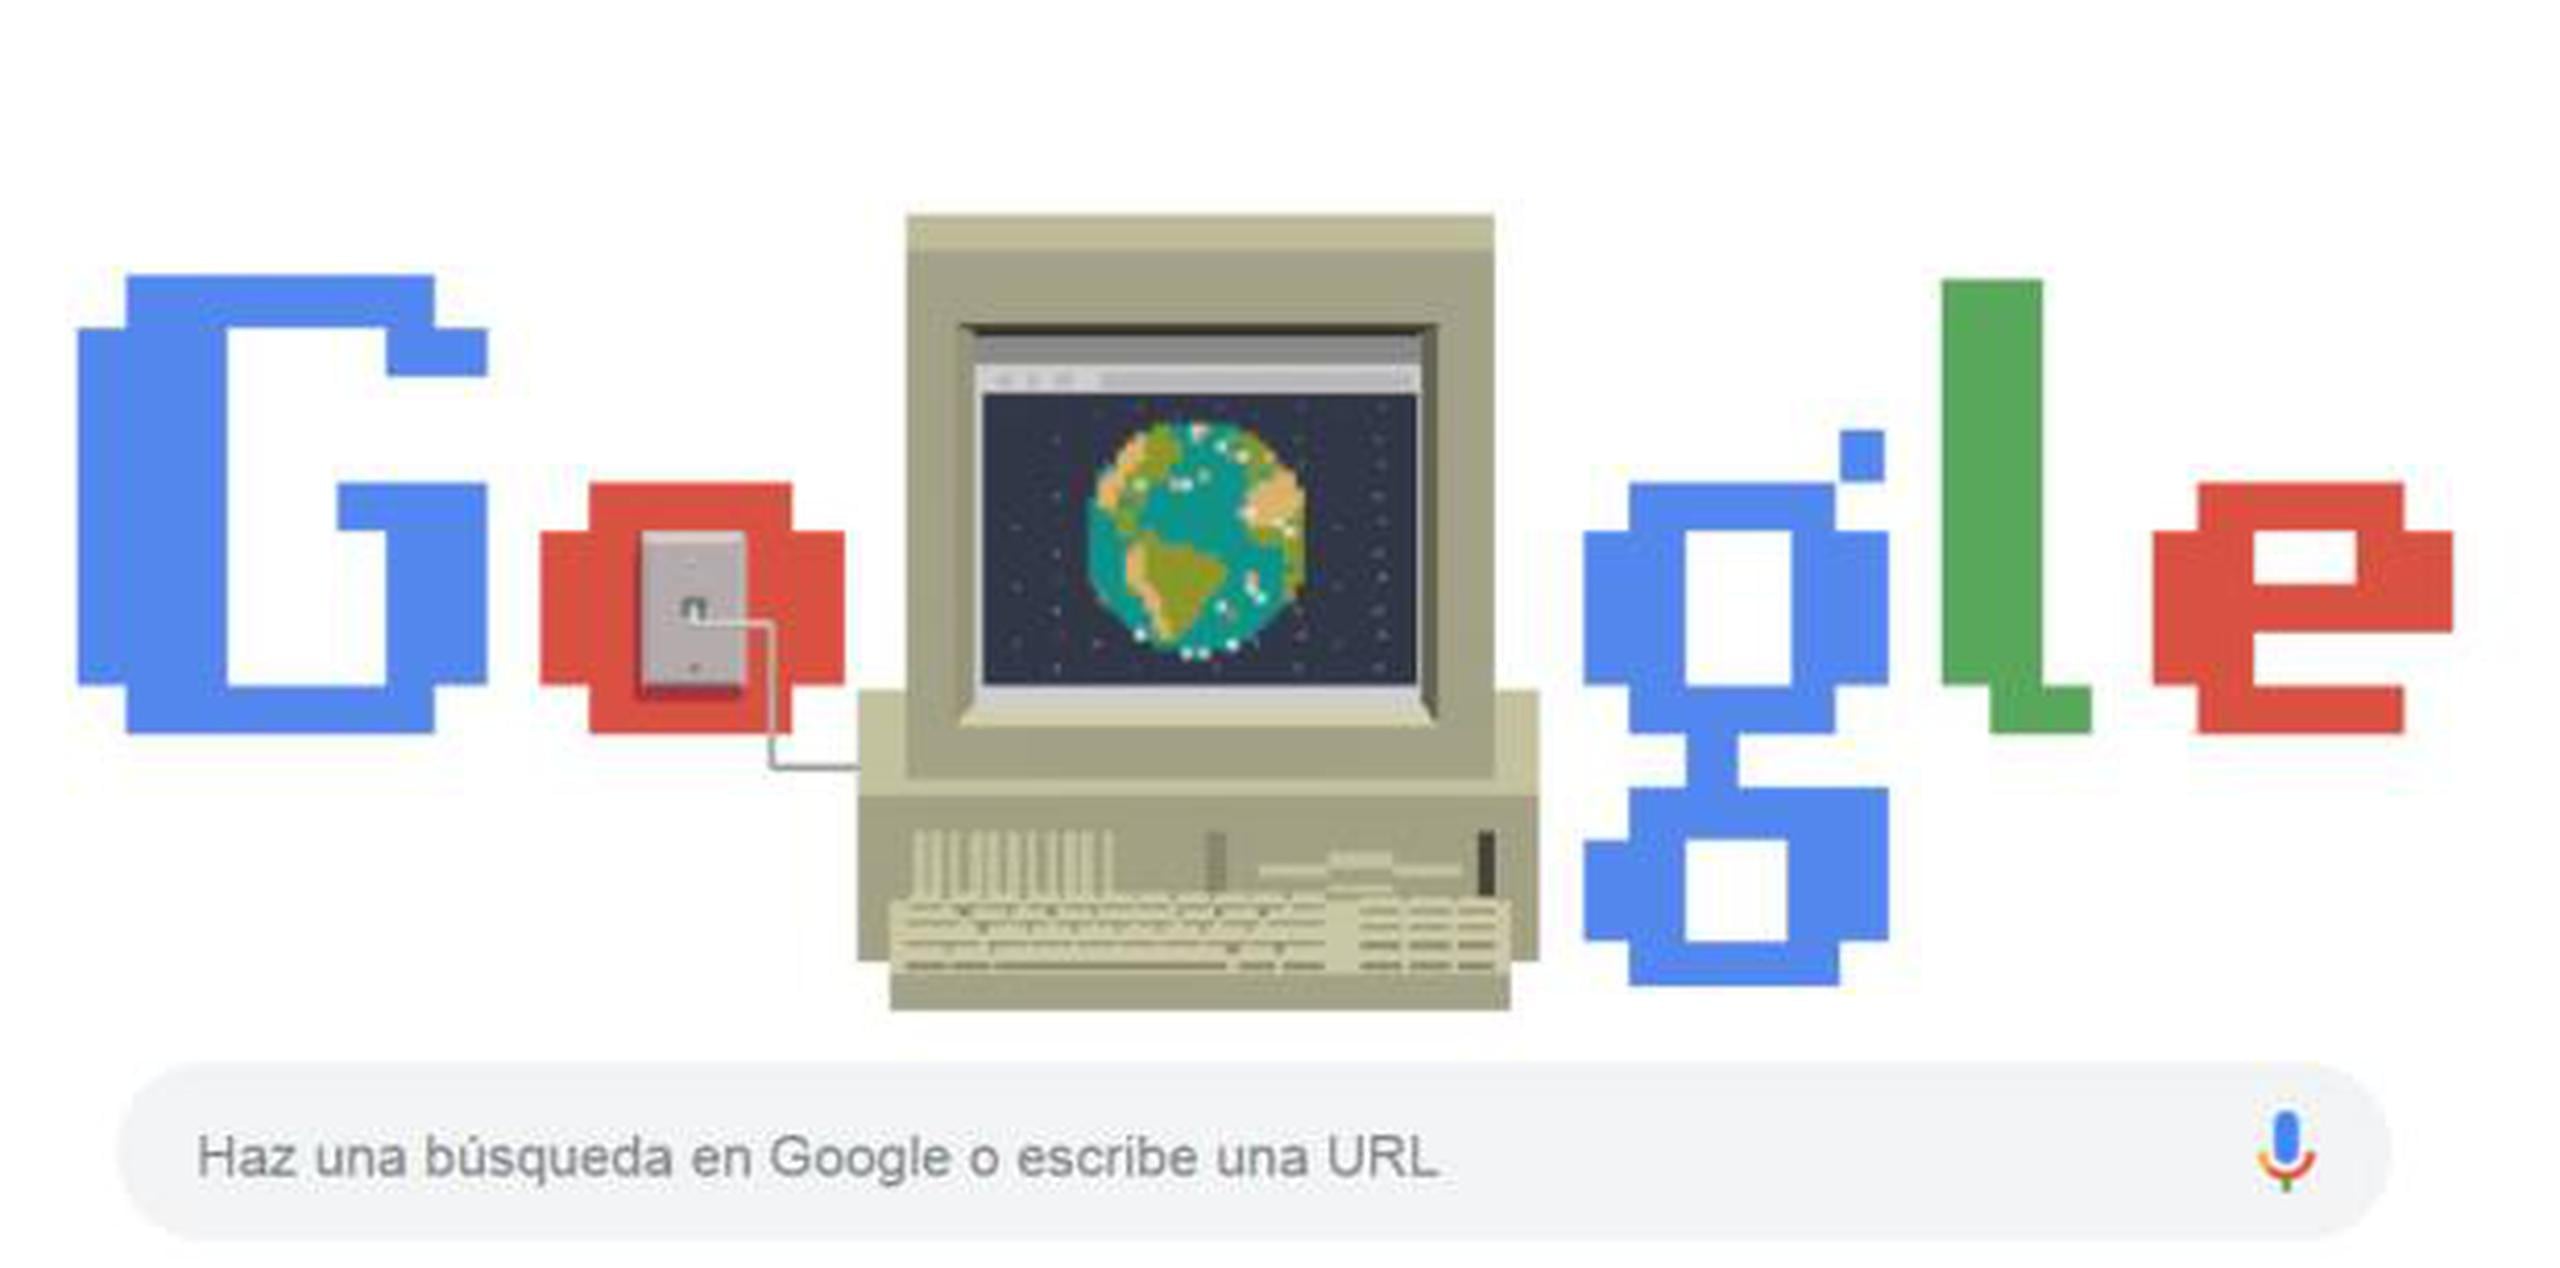 El doodle de Google fue dedicado al aniversario de la Web. (Captura)